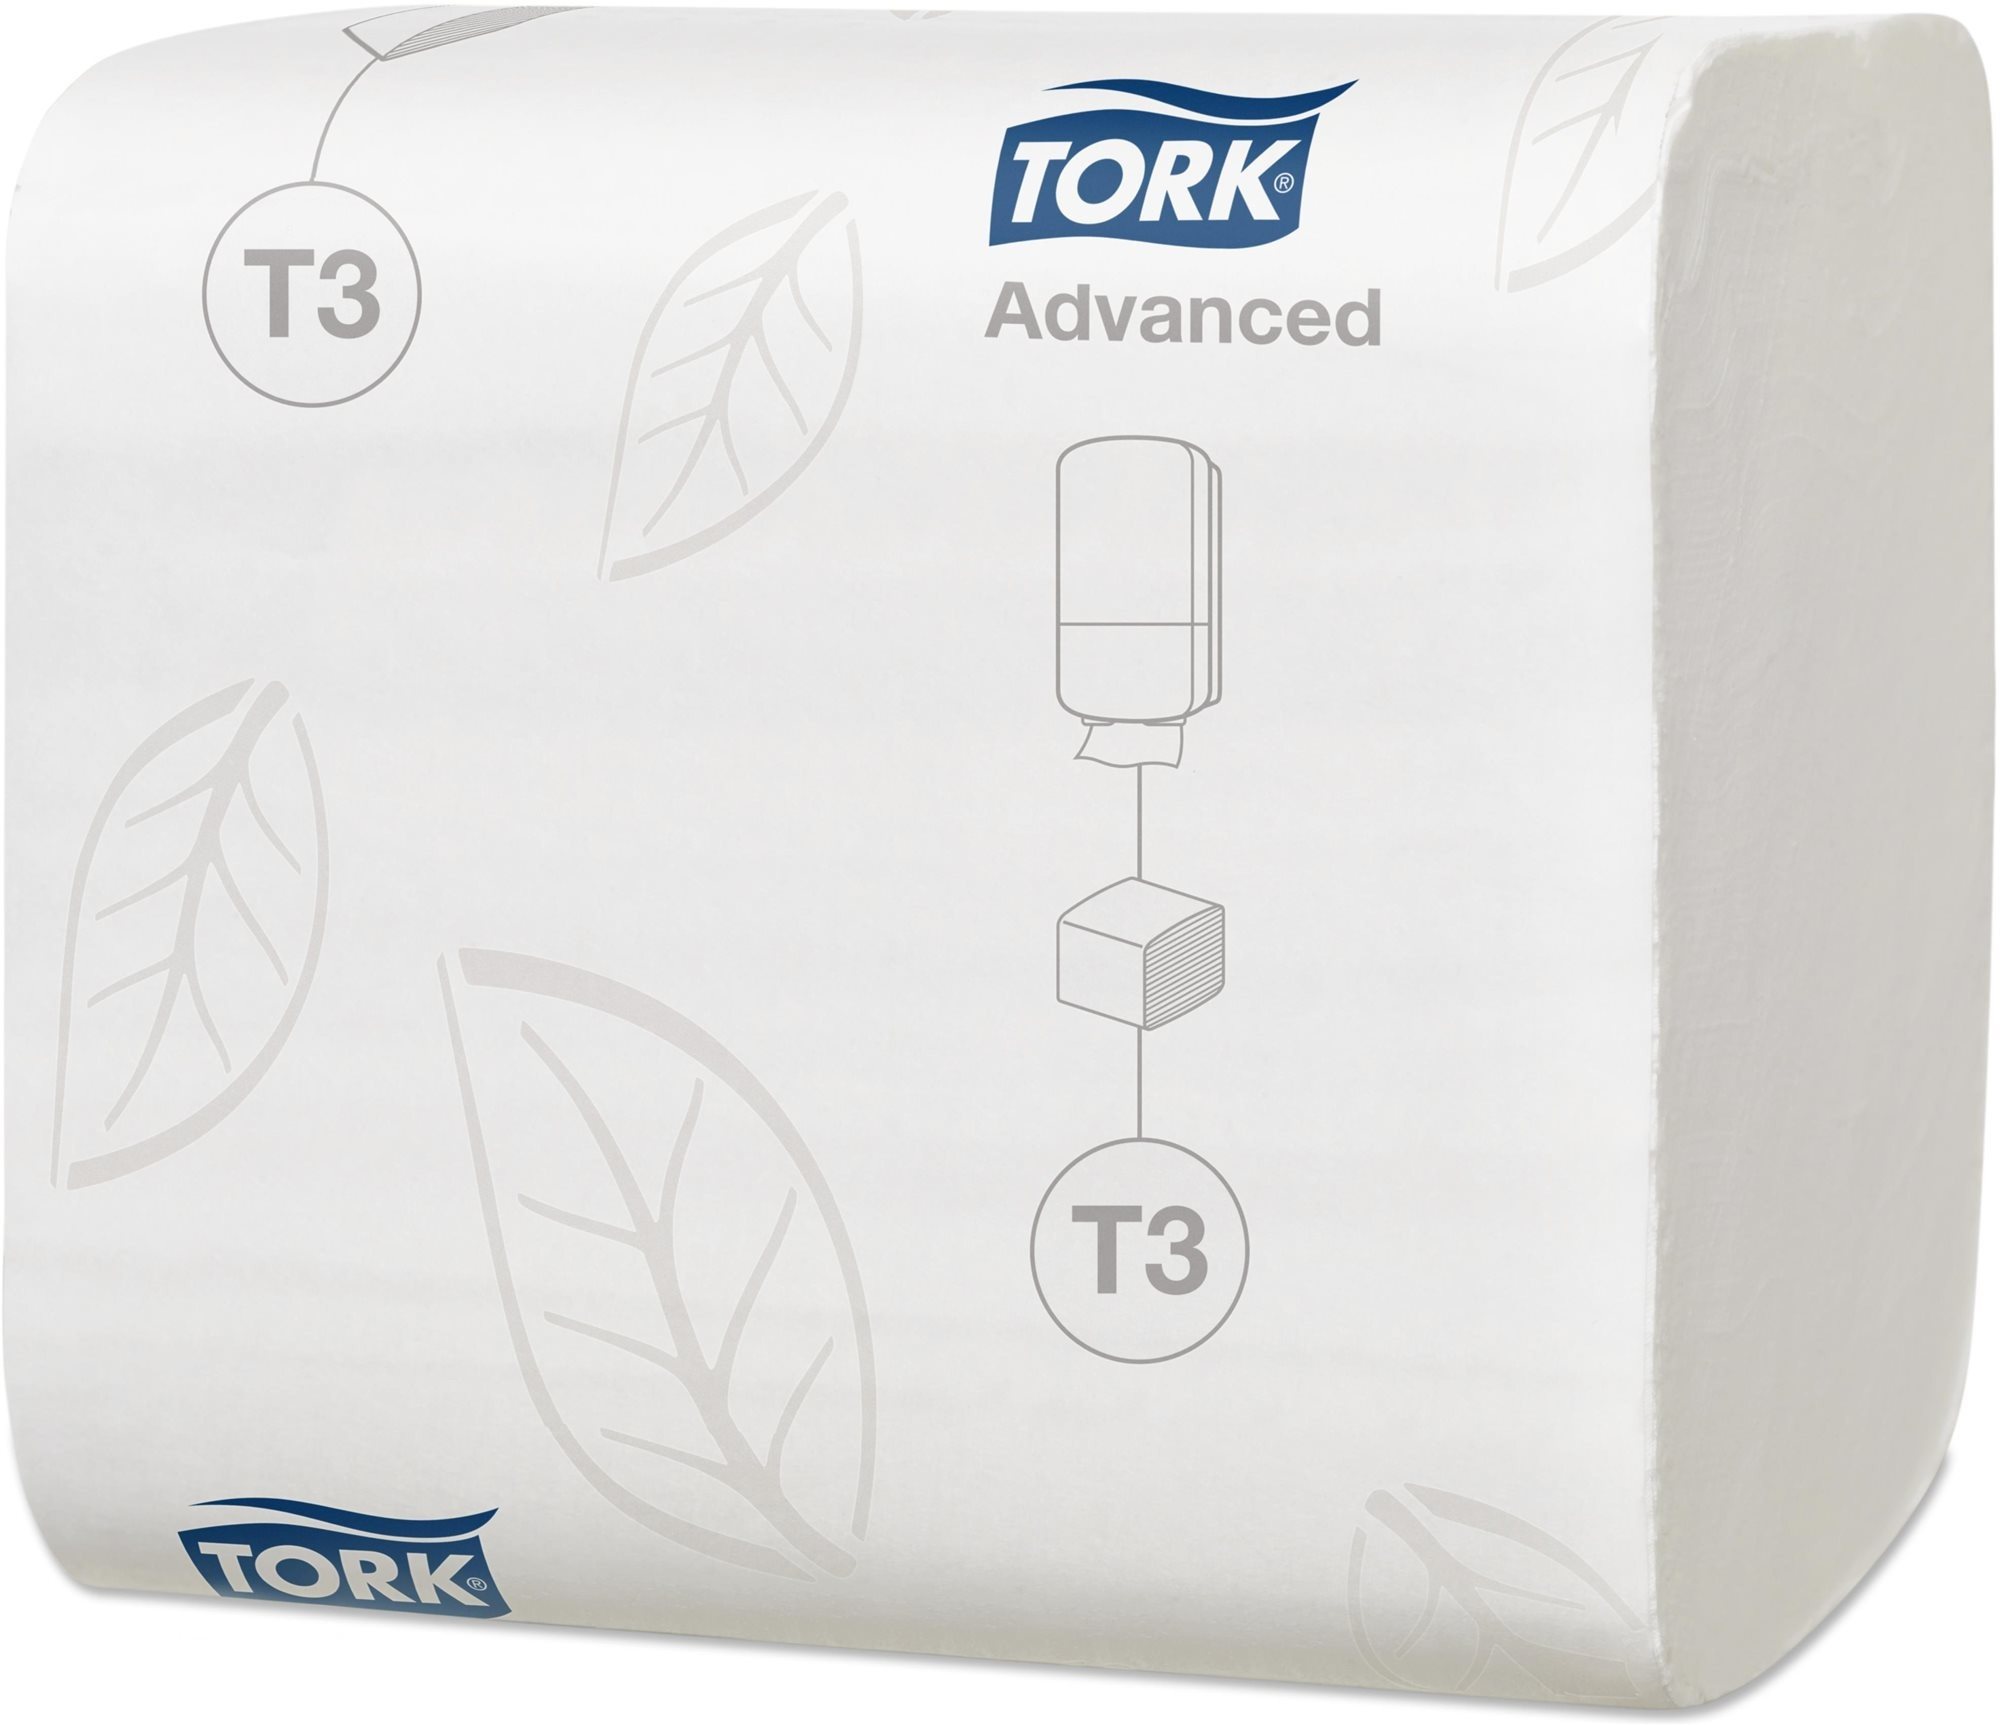 TORK Advanced T3